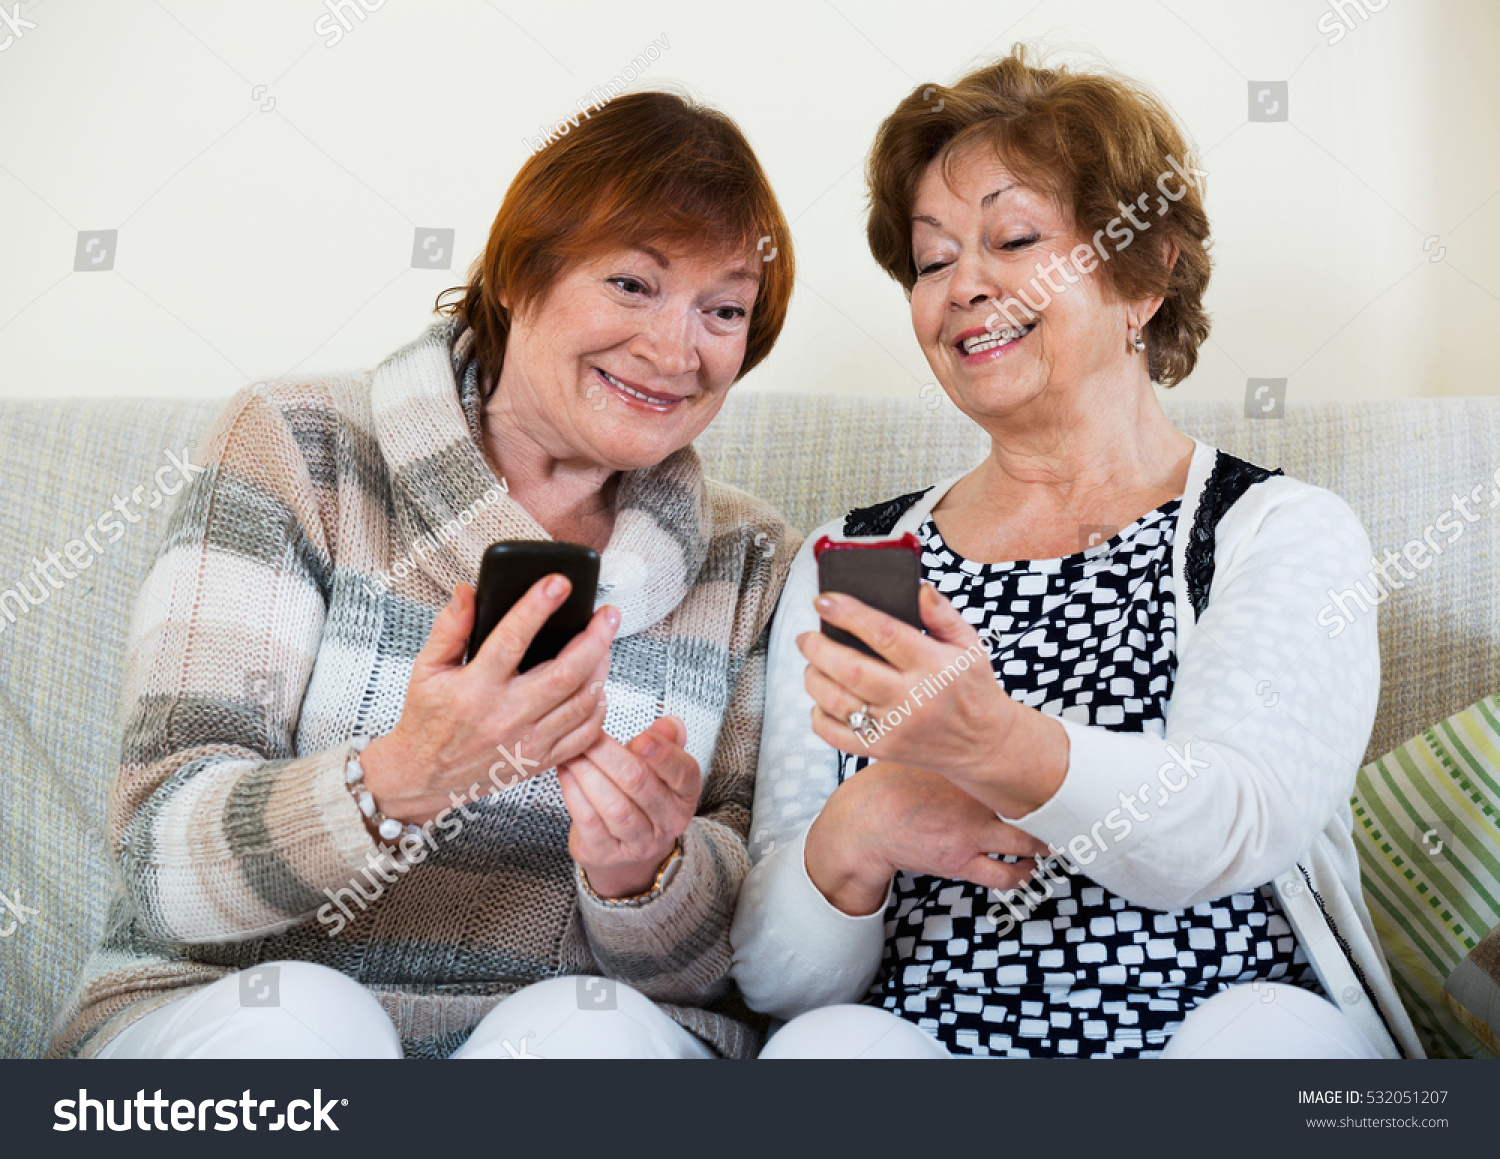 Happy smiling  mature women browsing internet on smarthphones indoor #532051207